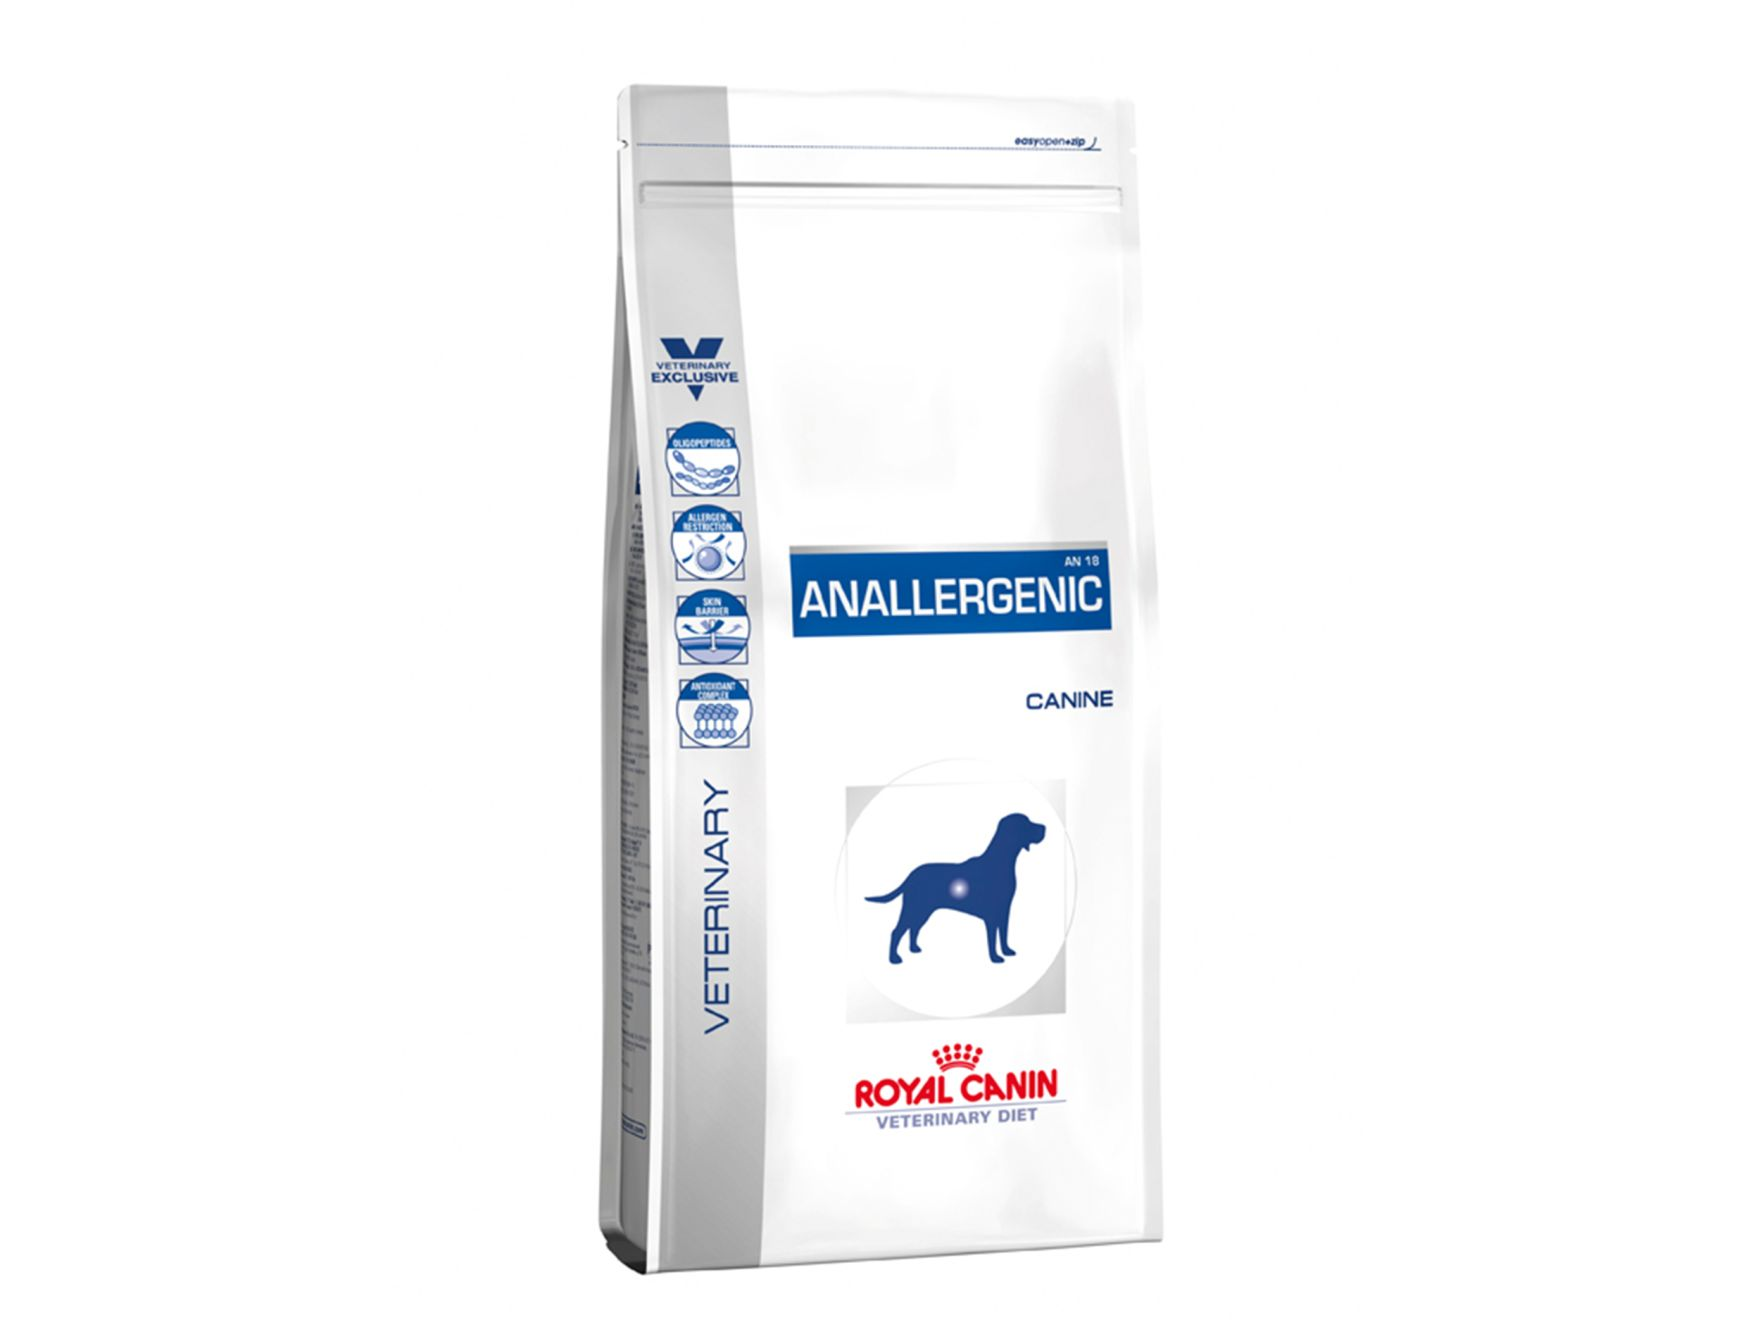 Packshot von Royal Canin Anallergenic-Produkt